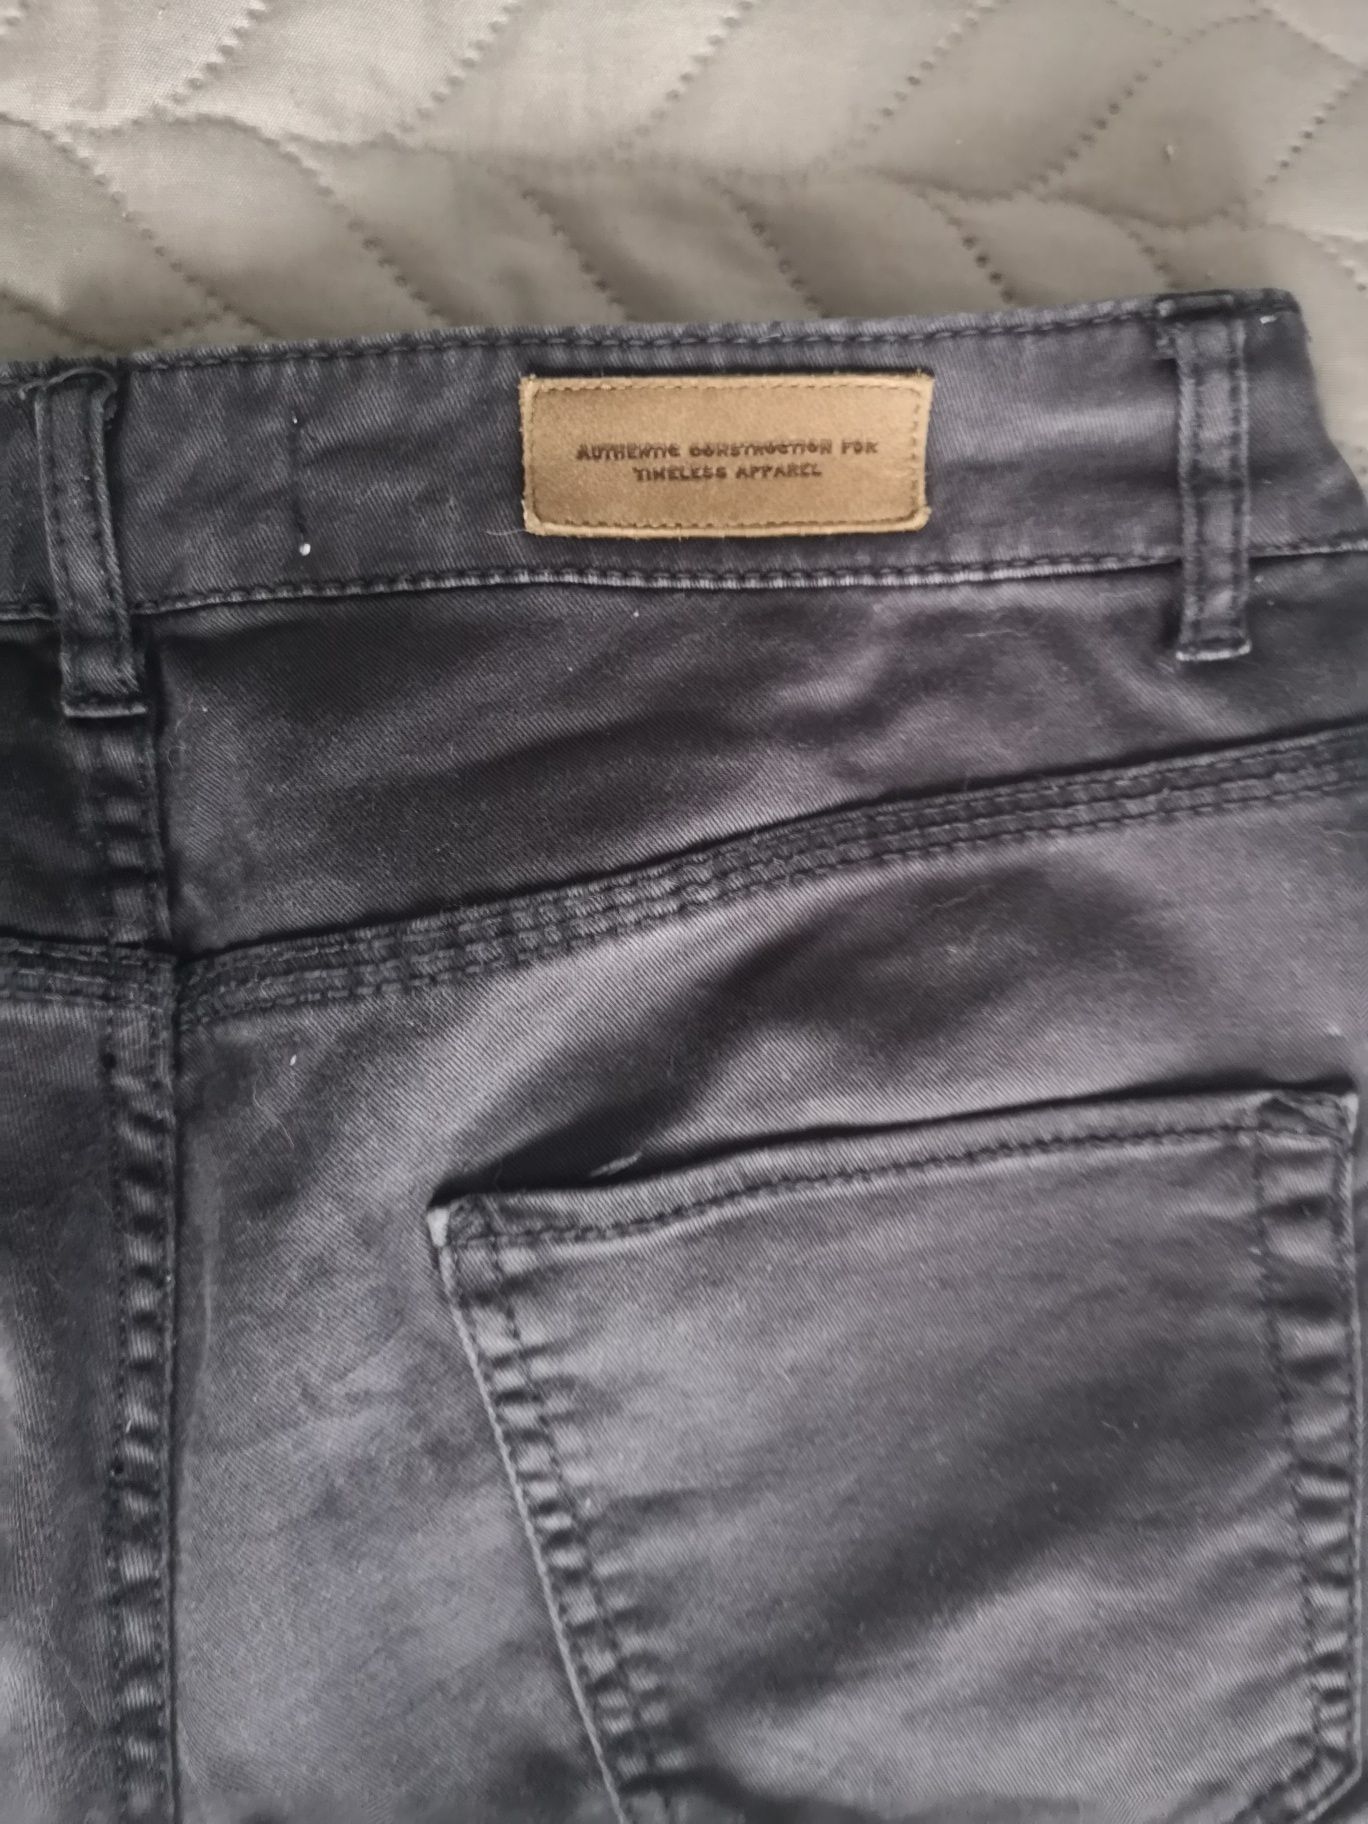 Spodnie dżinsowe granatowe Zara rozmiar 38